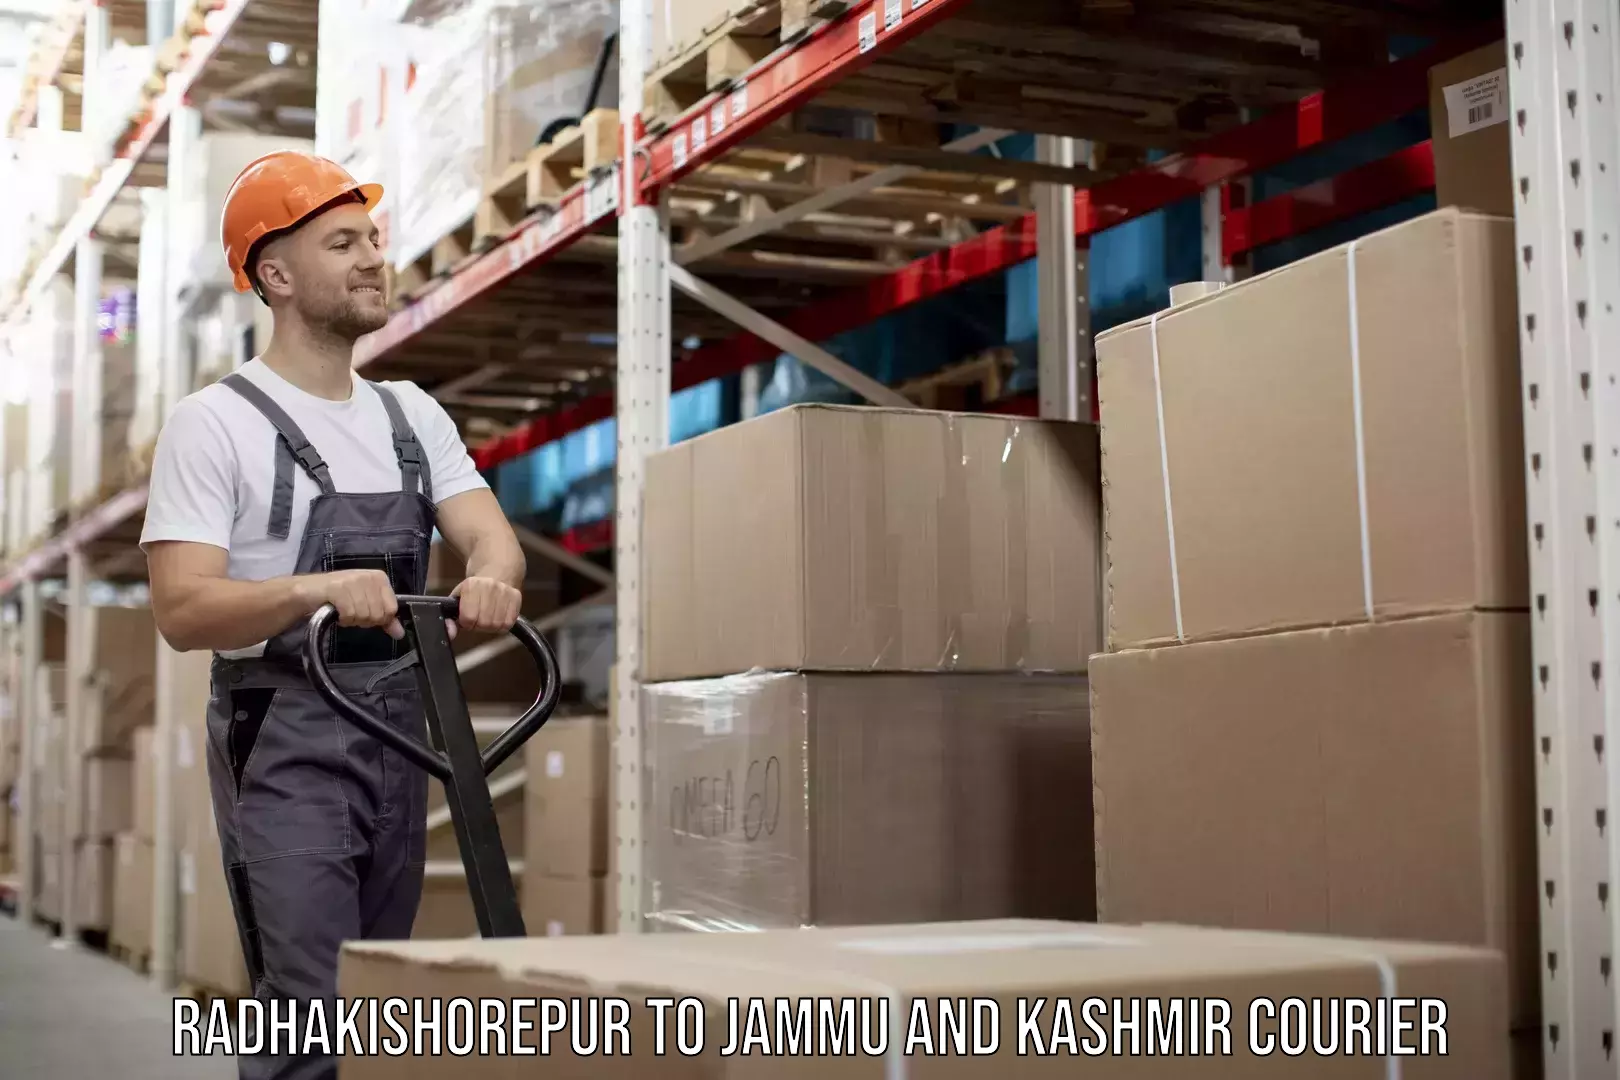 Efficient cargo services Radhakishorepur to Jammu and Kashmir